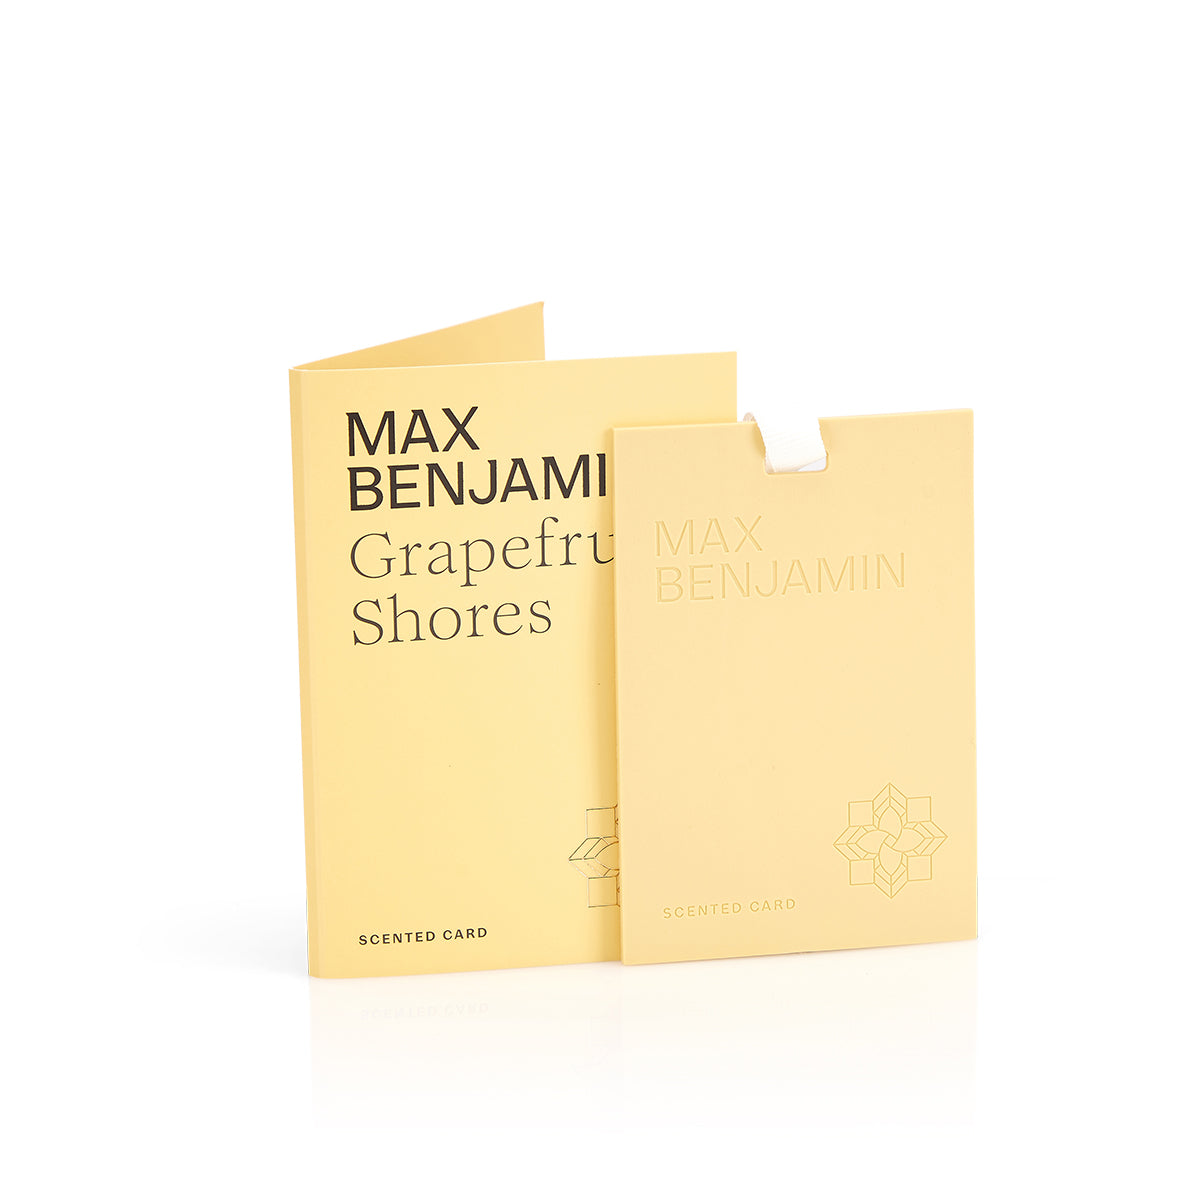 Max Benjamin, Grapefruit Shores Scented Card